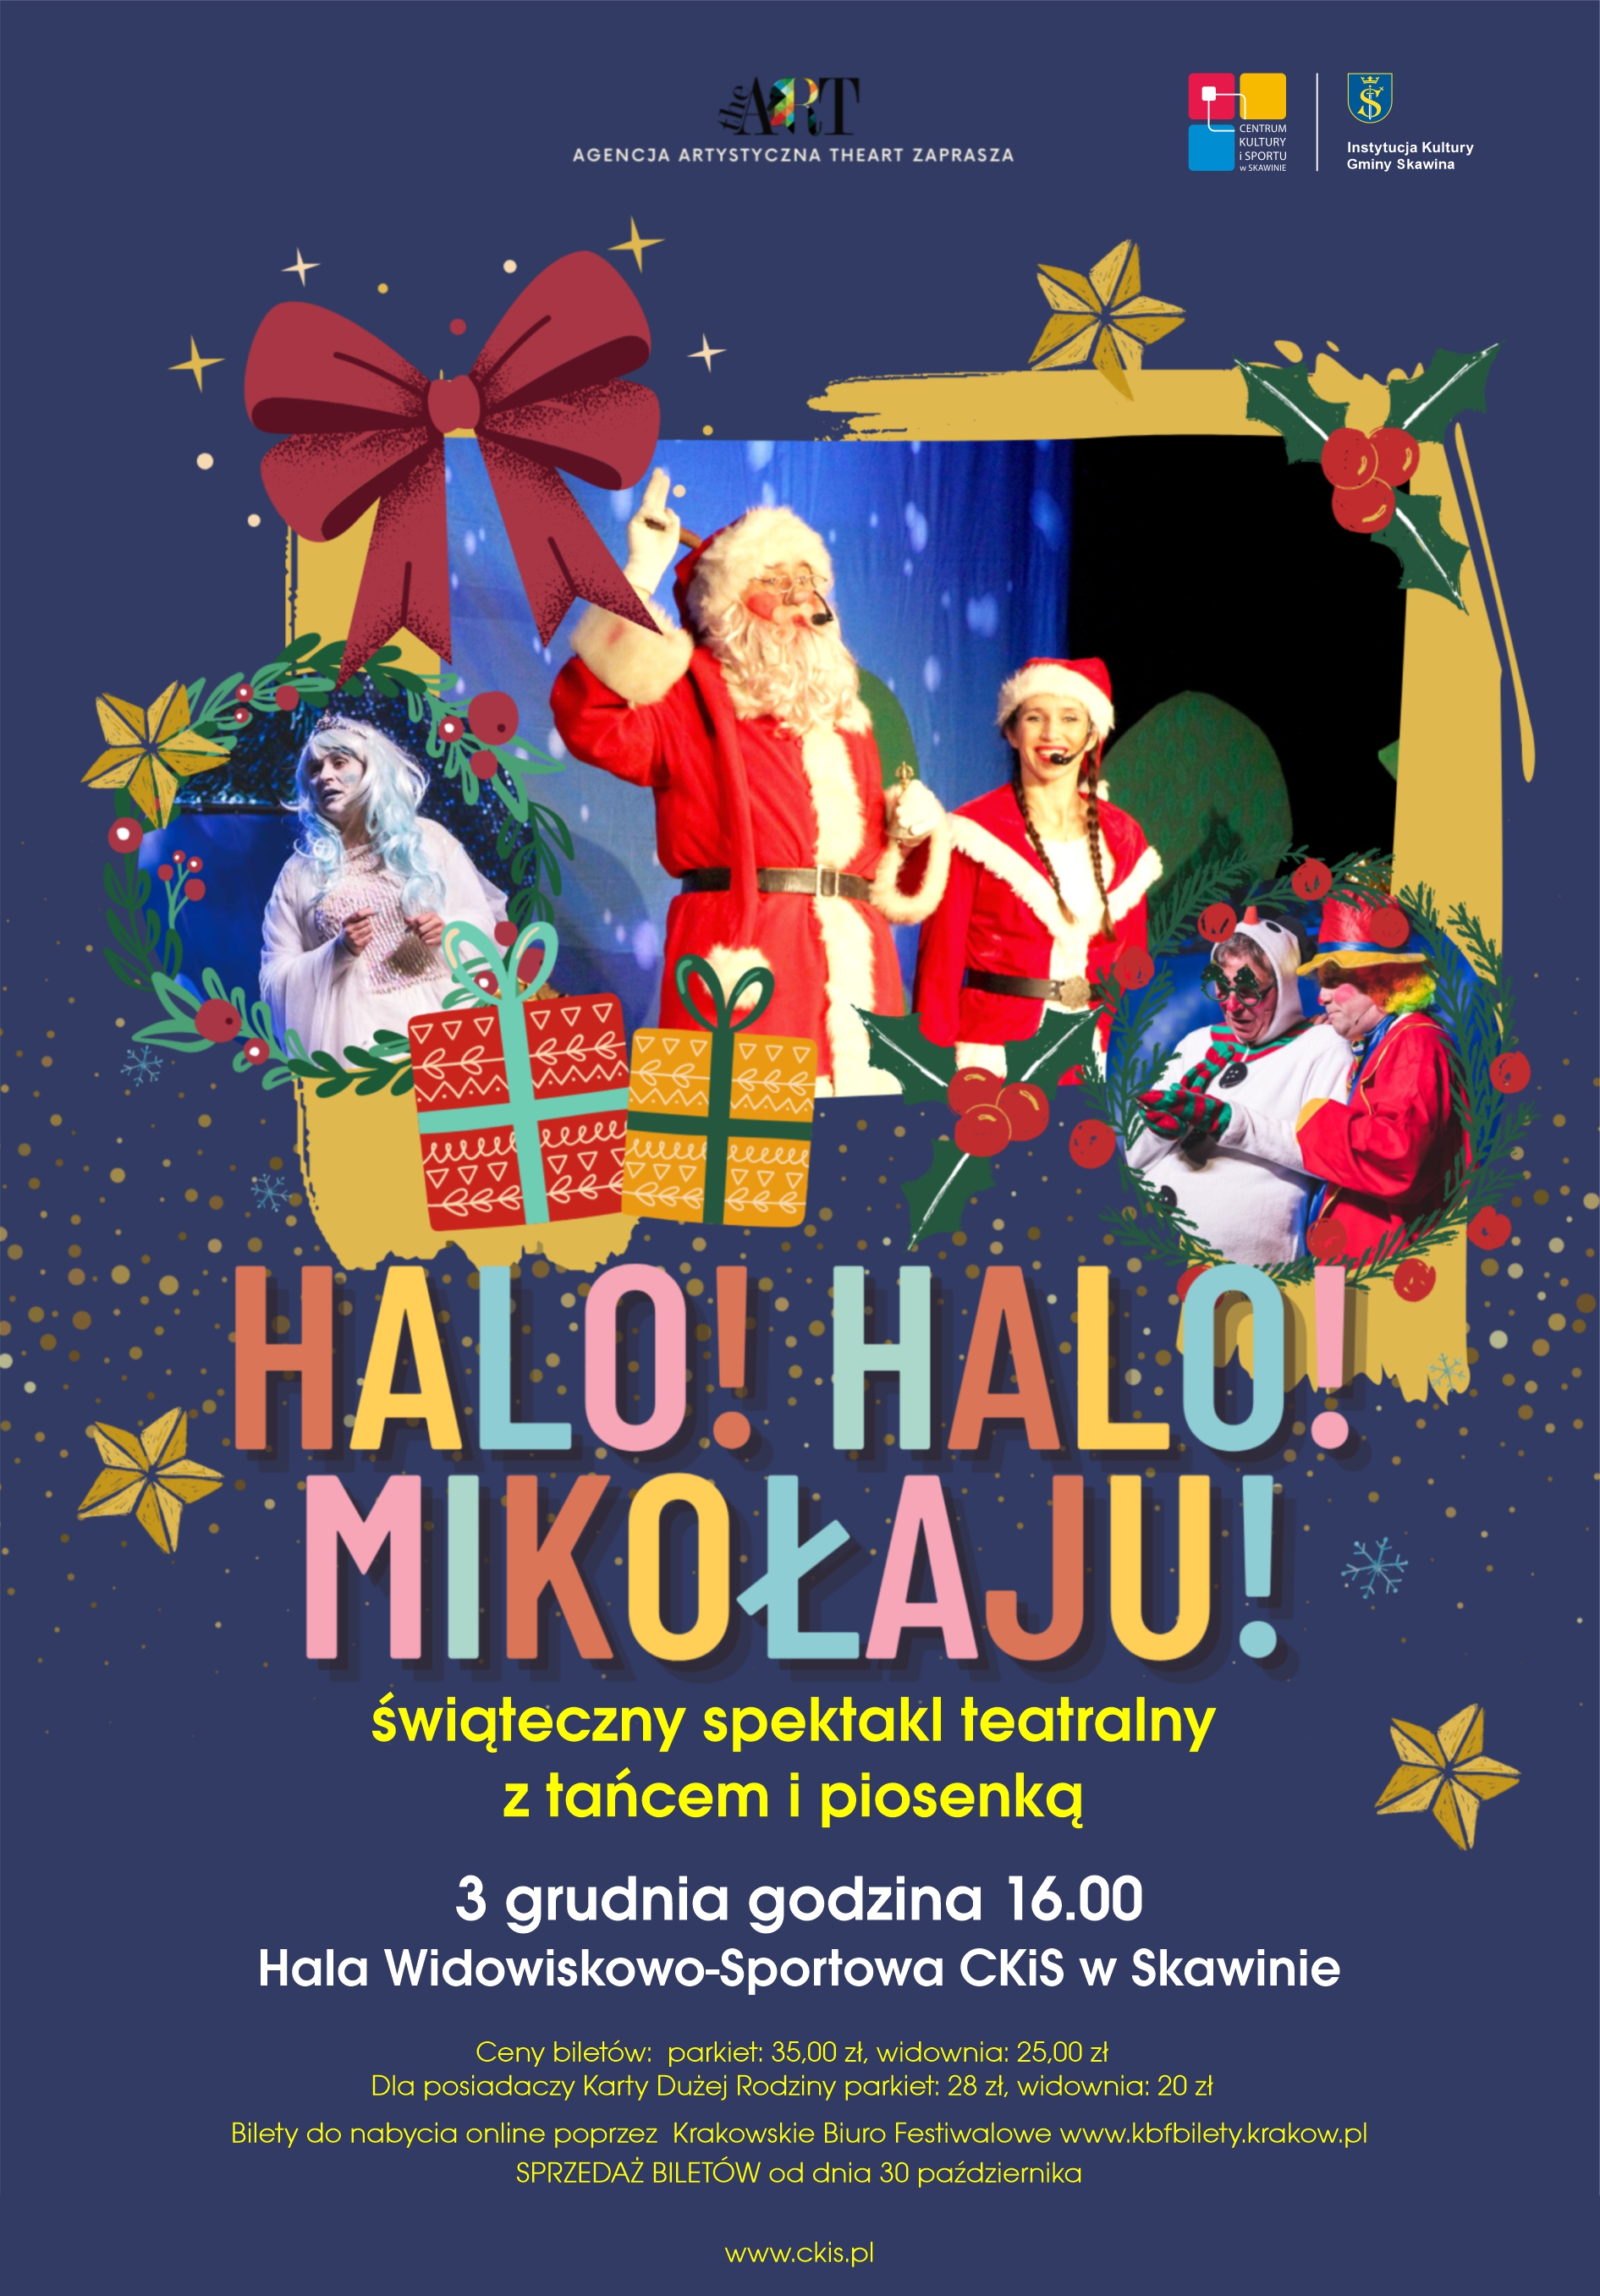 Halo, Halo Mikołaju!  świąteczny spektakl teatralny z tańcem i piosenką, 3 grudnia godzina 16:00, Hala Widowiskowo-Sportowa CKiS Skawina, plakat świateczny przedstawiający świetego Mikołaja